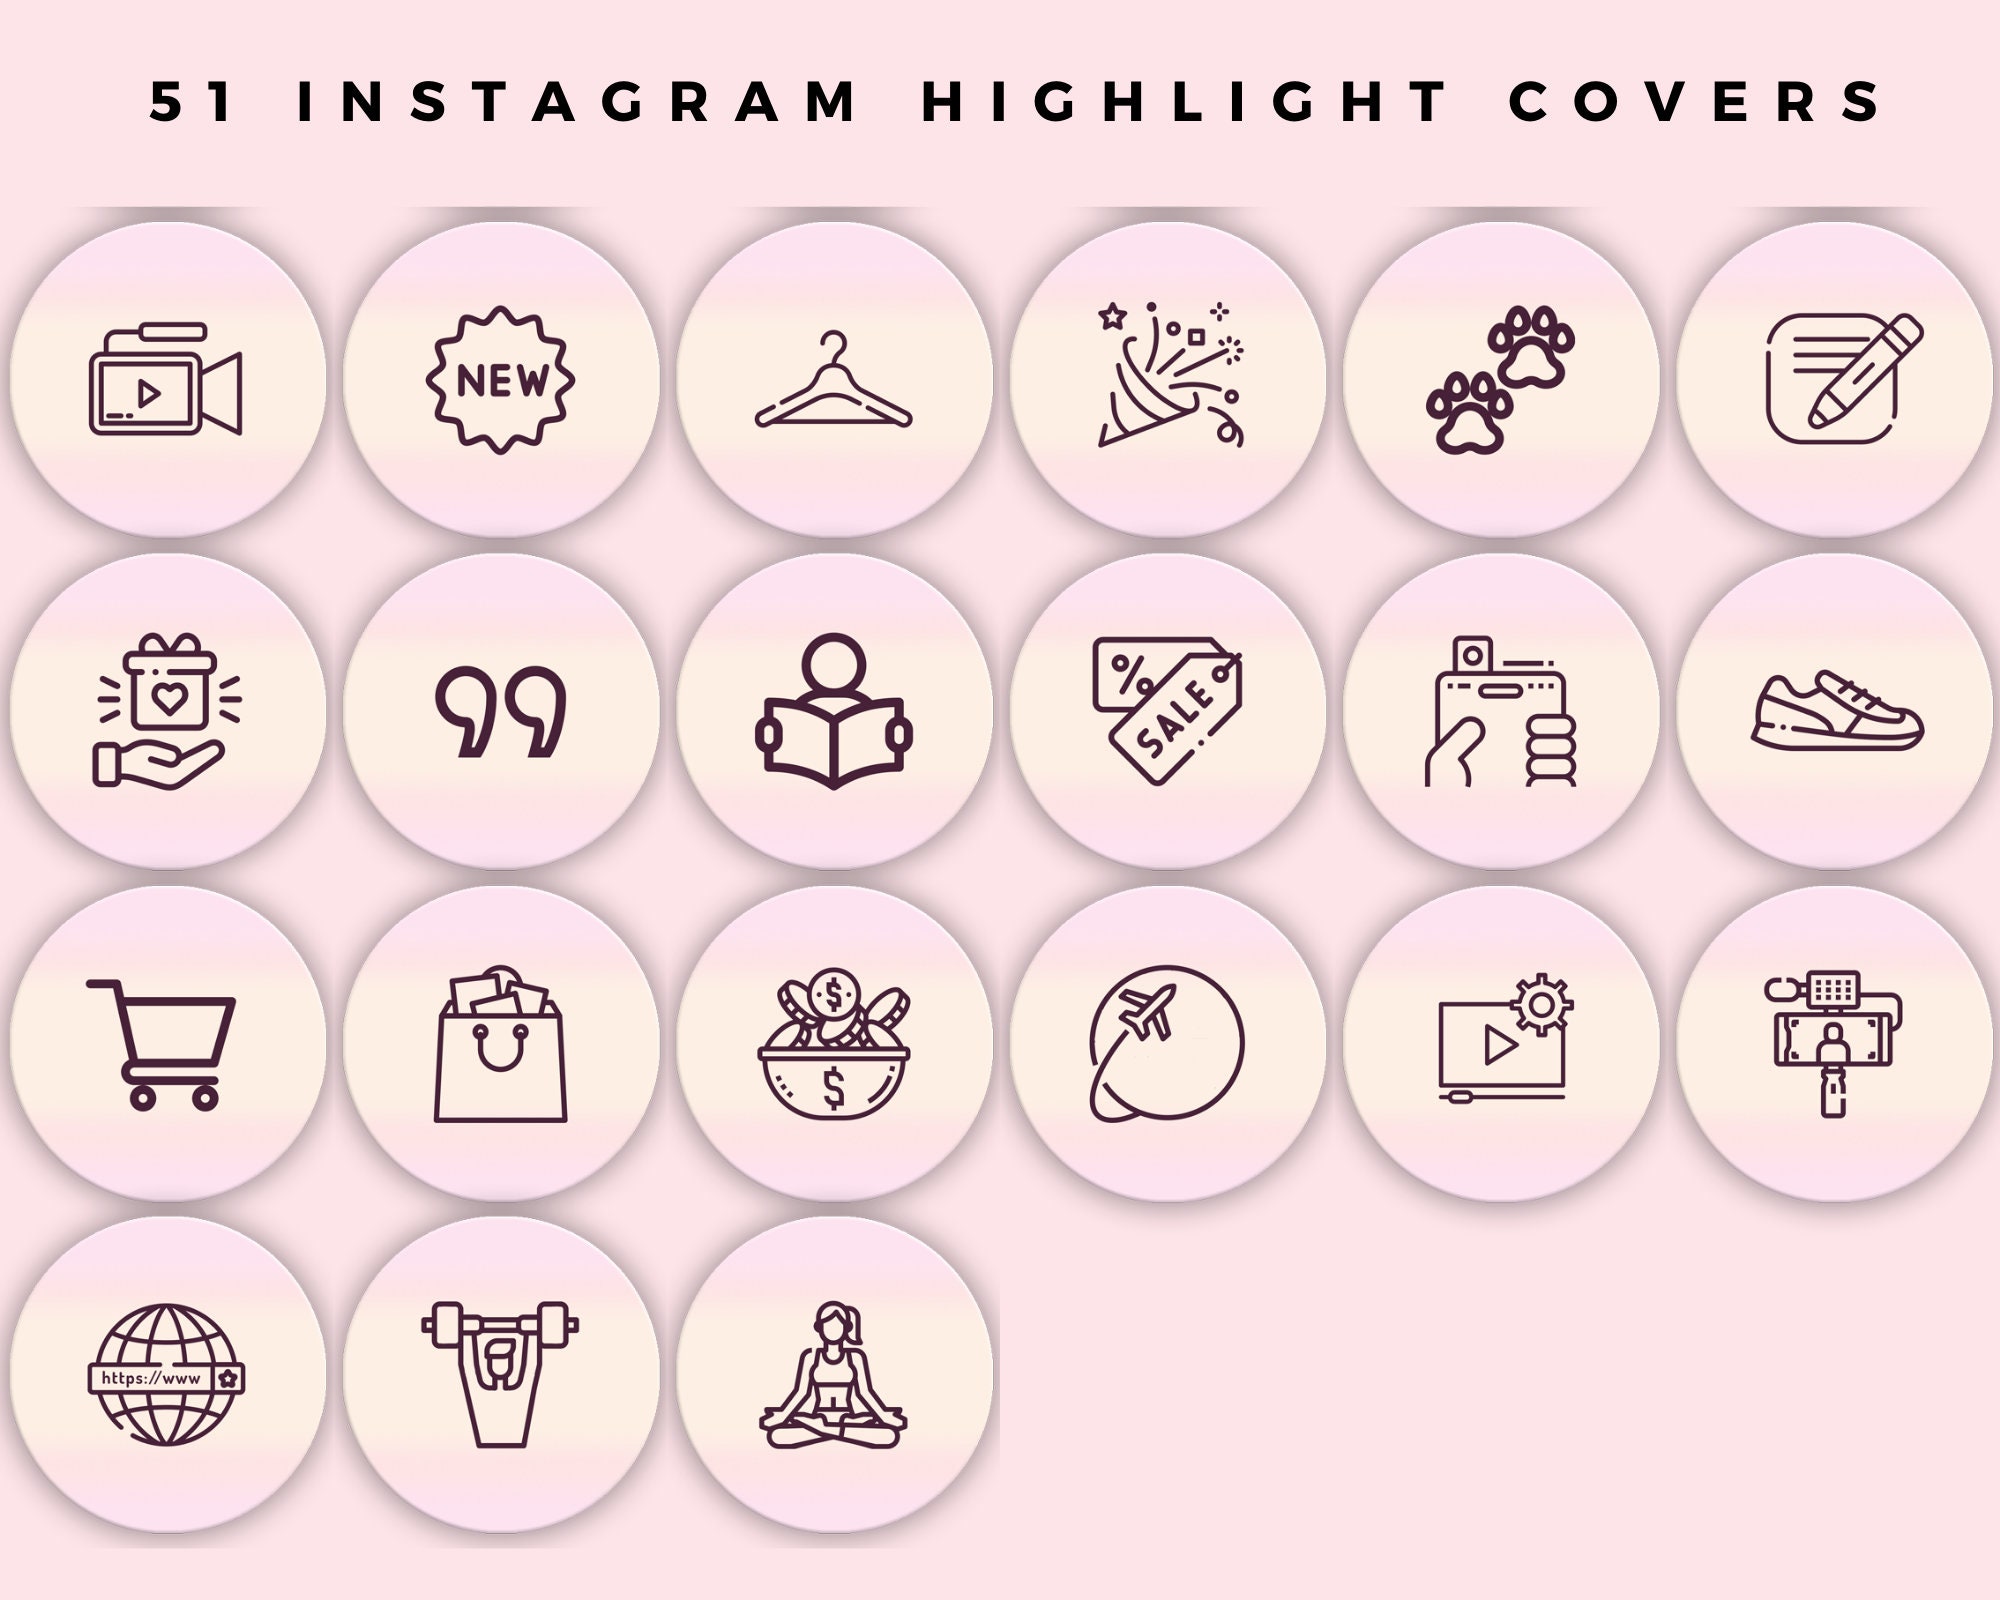 51 Instagram Highlight Covers Instagram Stories Highlight - Etsy